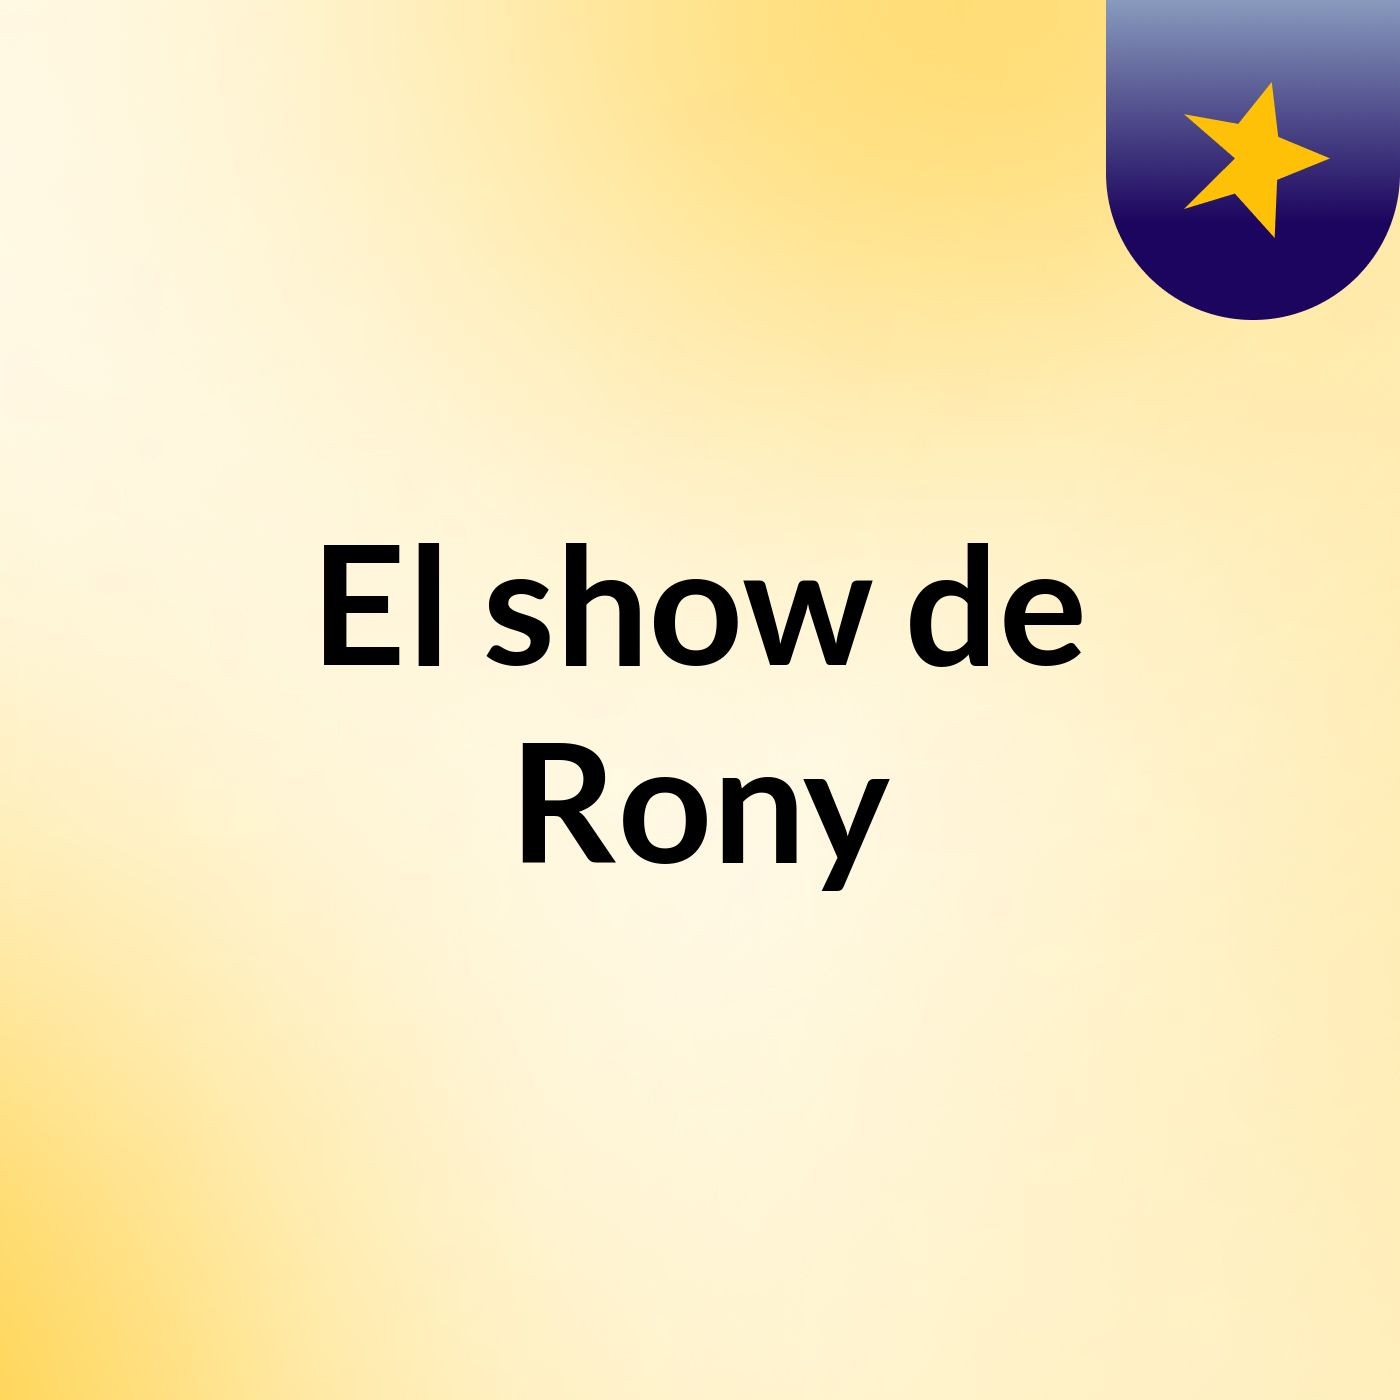 El show de Rony